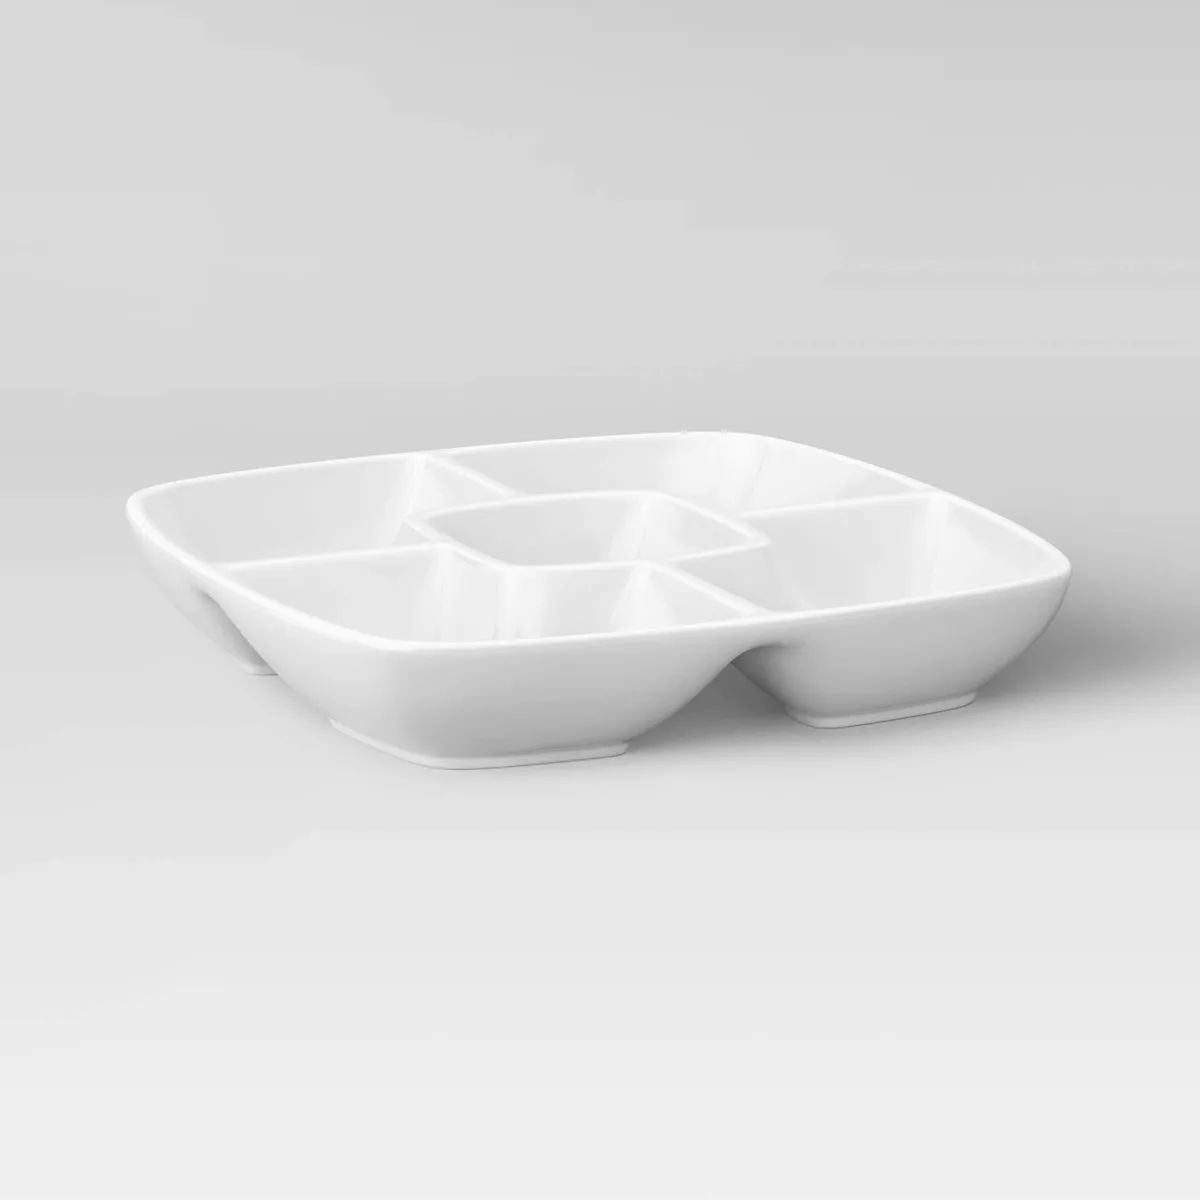 Square Porcelain Divided Serving Platter 11.5" White - Threshold™ | Target